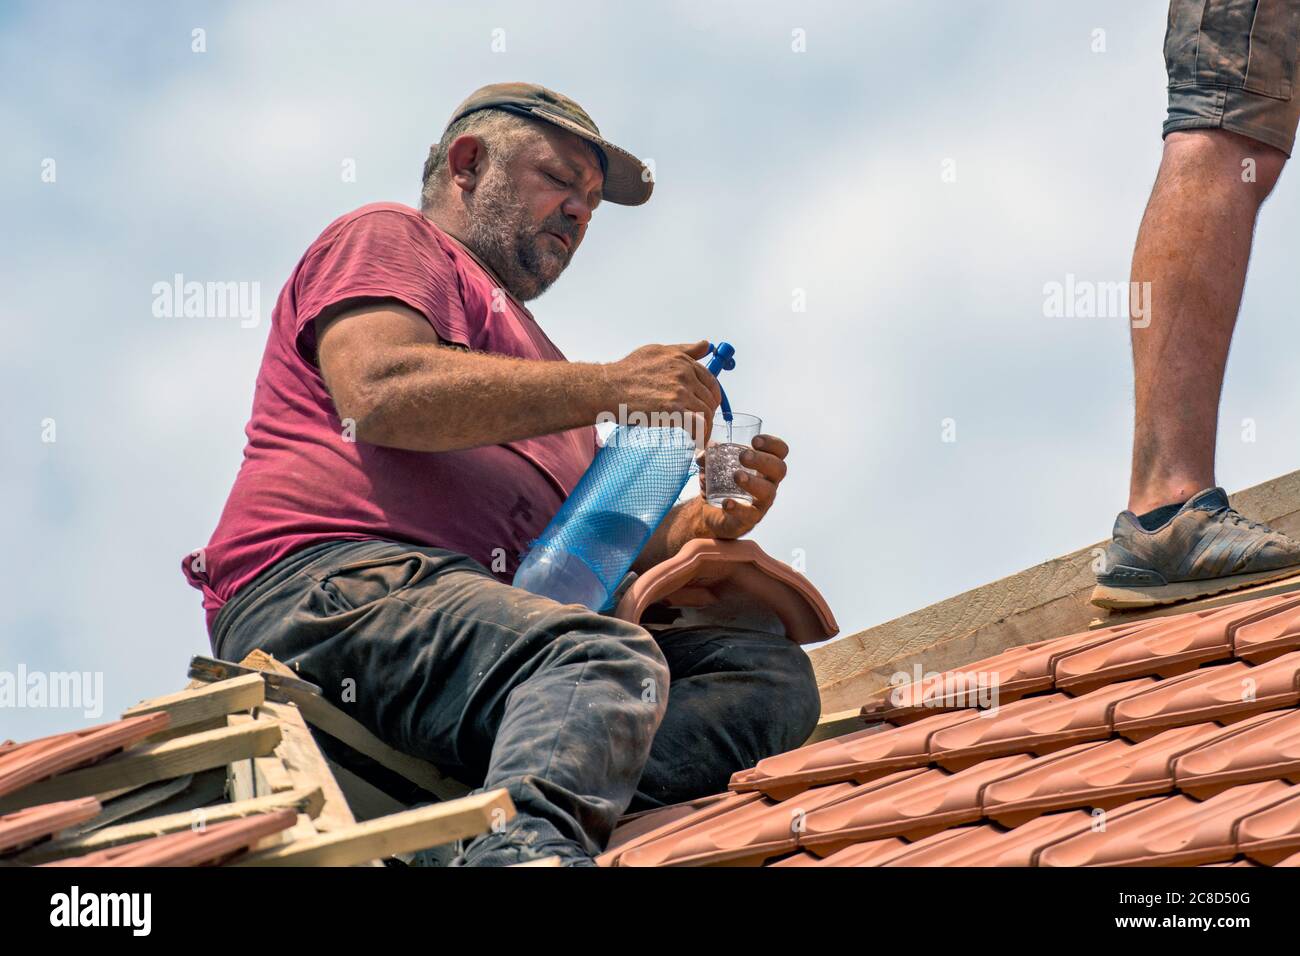 Zrenjanin, Serbien, 23. Juli 2020. Meister arbeiten auf dem Dach eines Privathauses, um eine alte Fliese zu ersetzen. Einer der Meister erfrischt sich mit Stockfoto